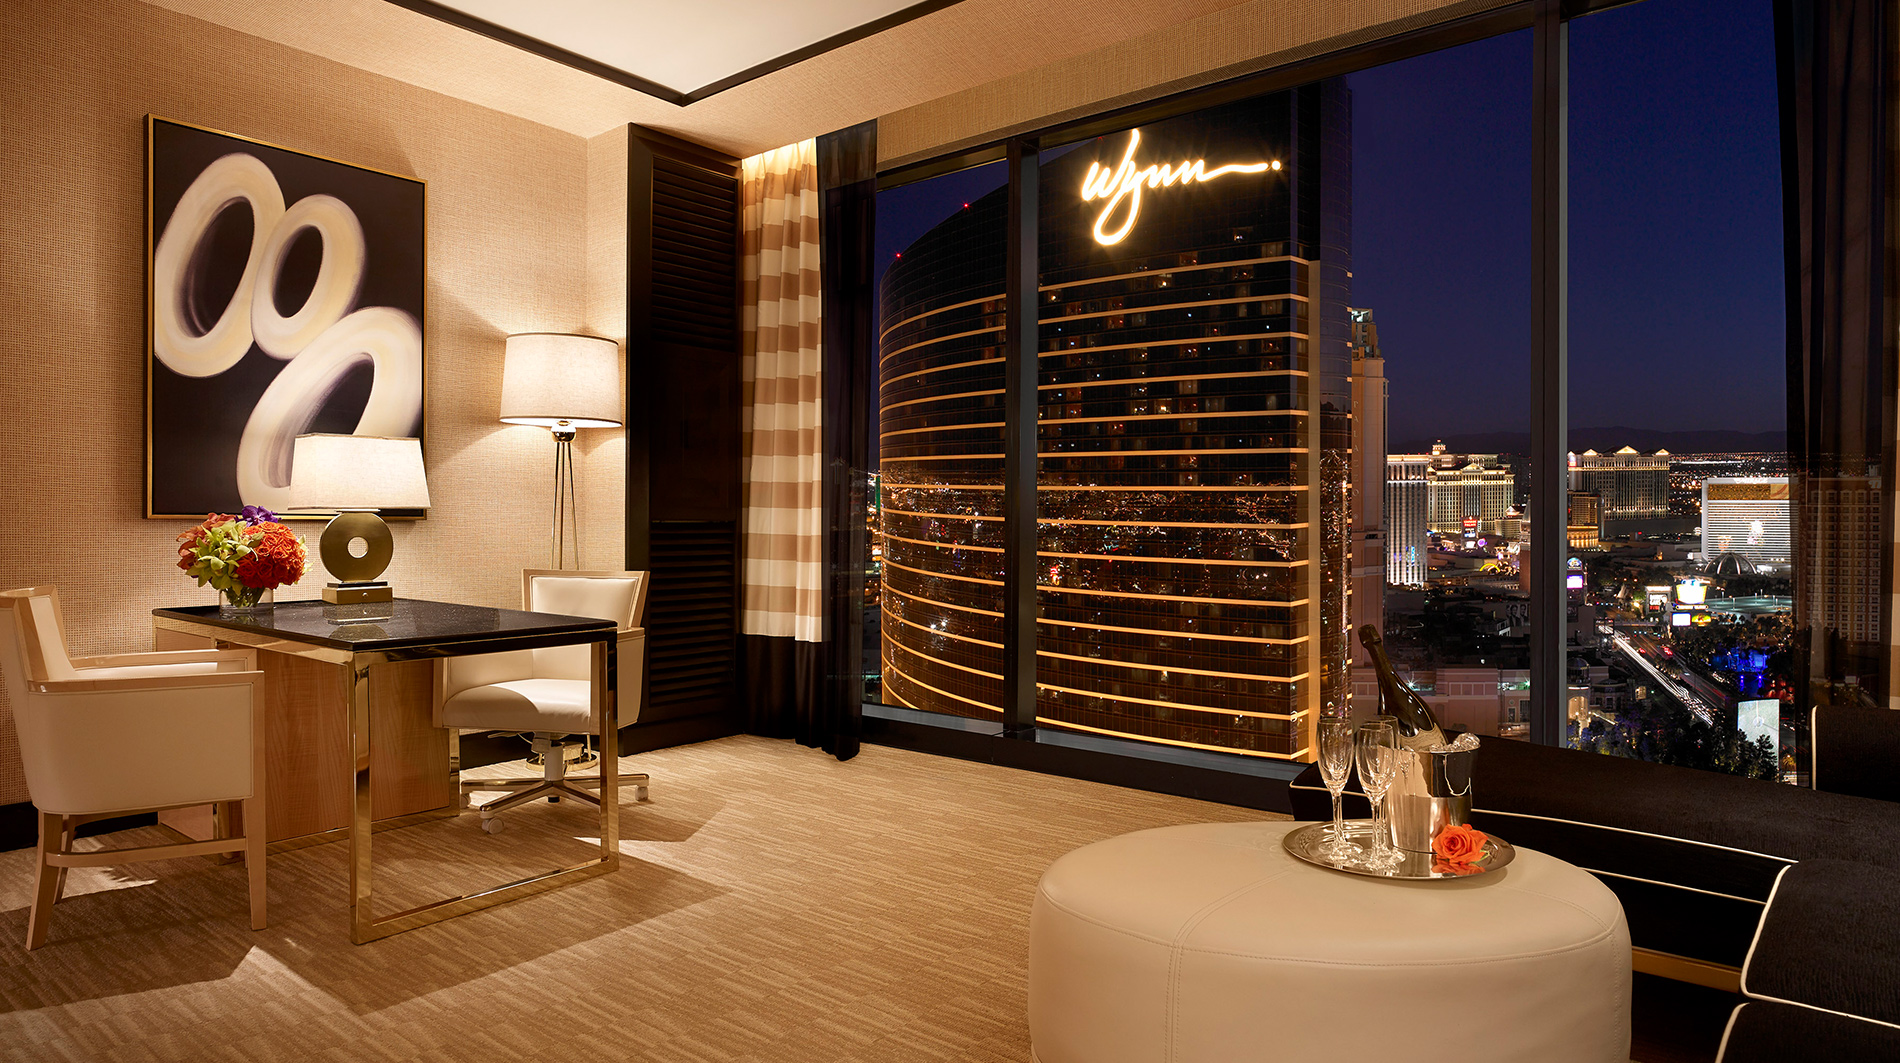 Encore at Wynn Las Vegas Las Vegas Hotels Las Vegas, United States